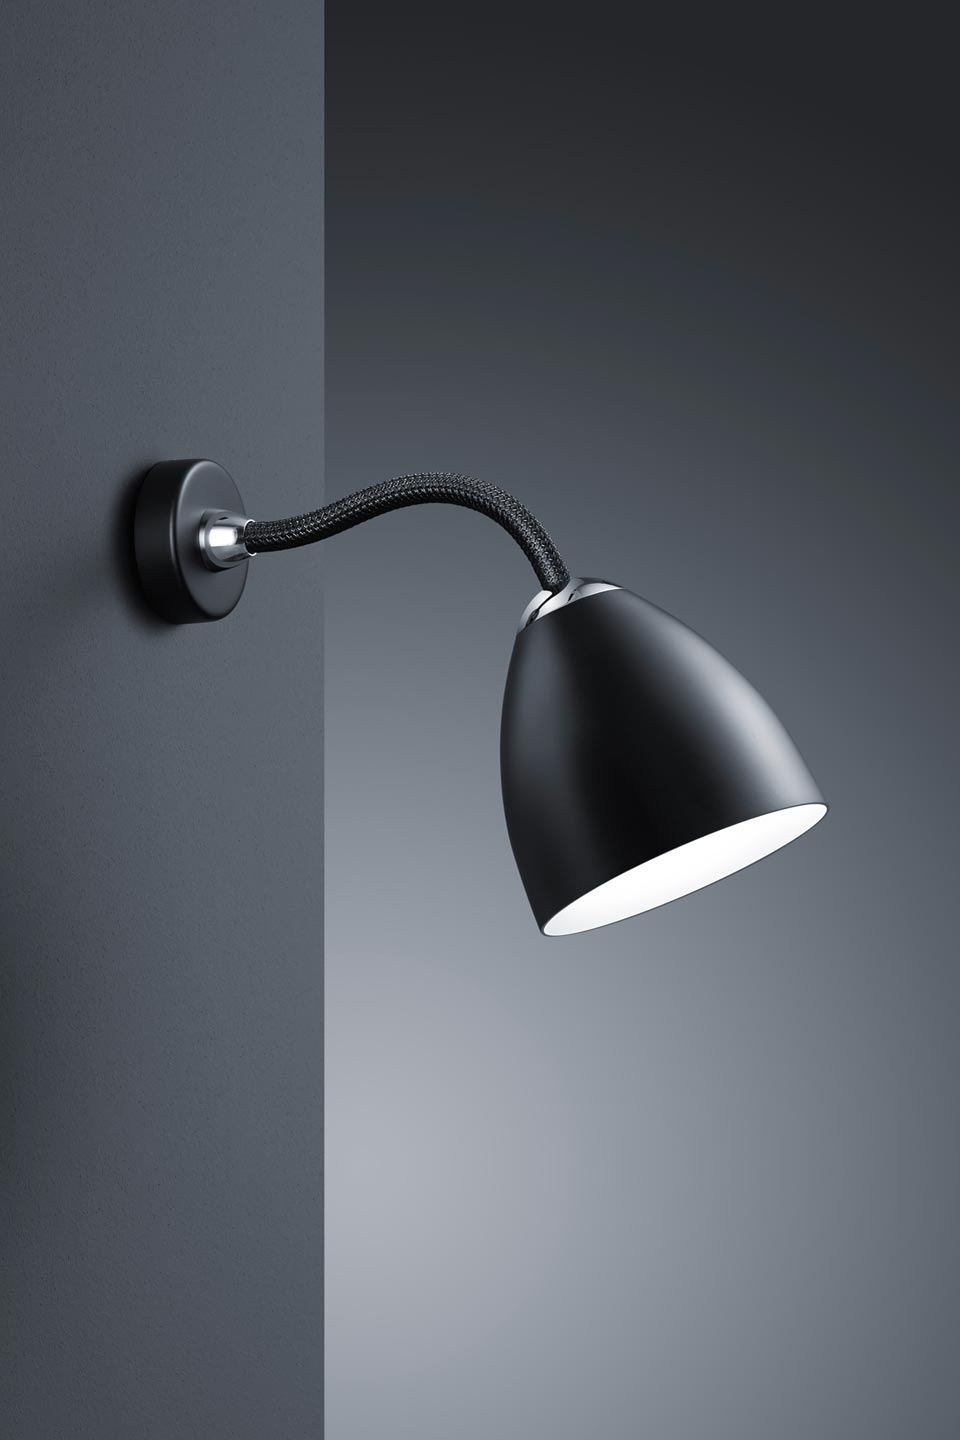 Athene Grande puissante lampe de bureau LED flexible noir: Less n More,  luminaire design fabriqué en Allemagne - Réf. 12060310